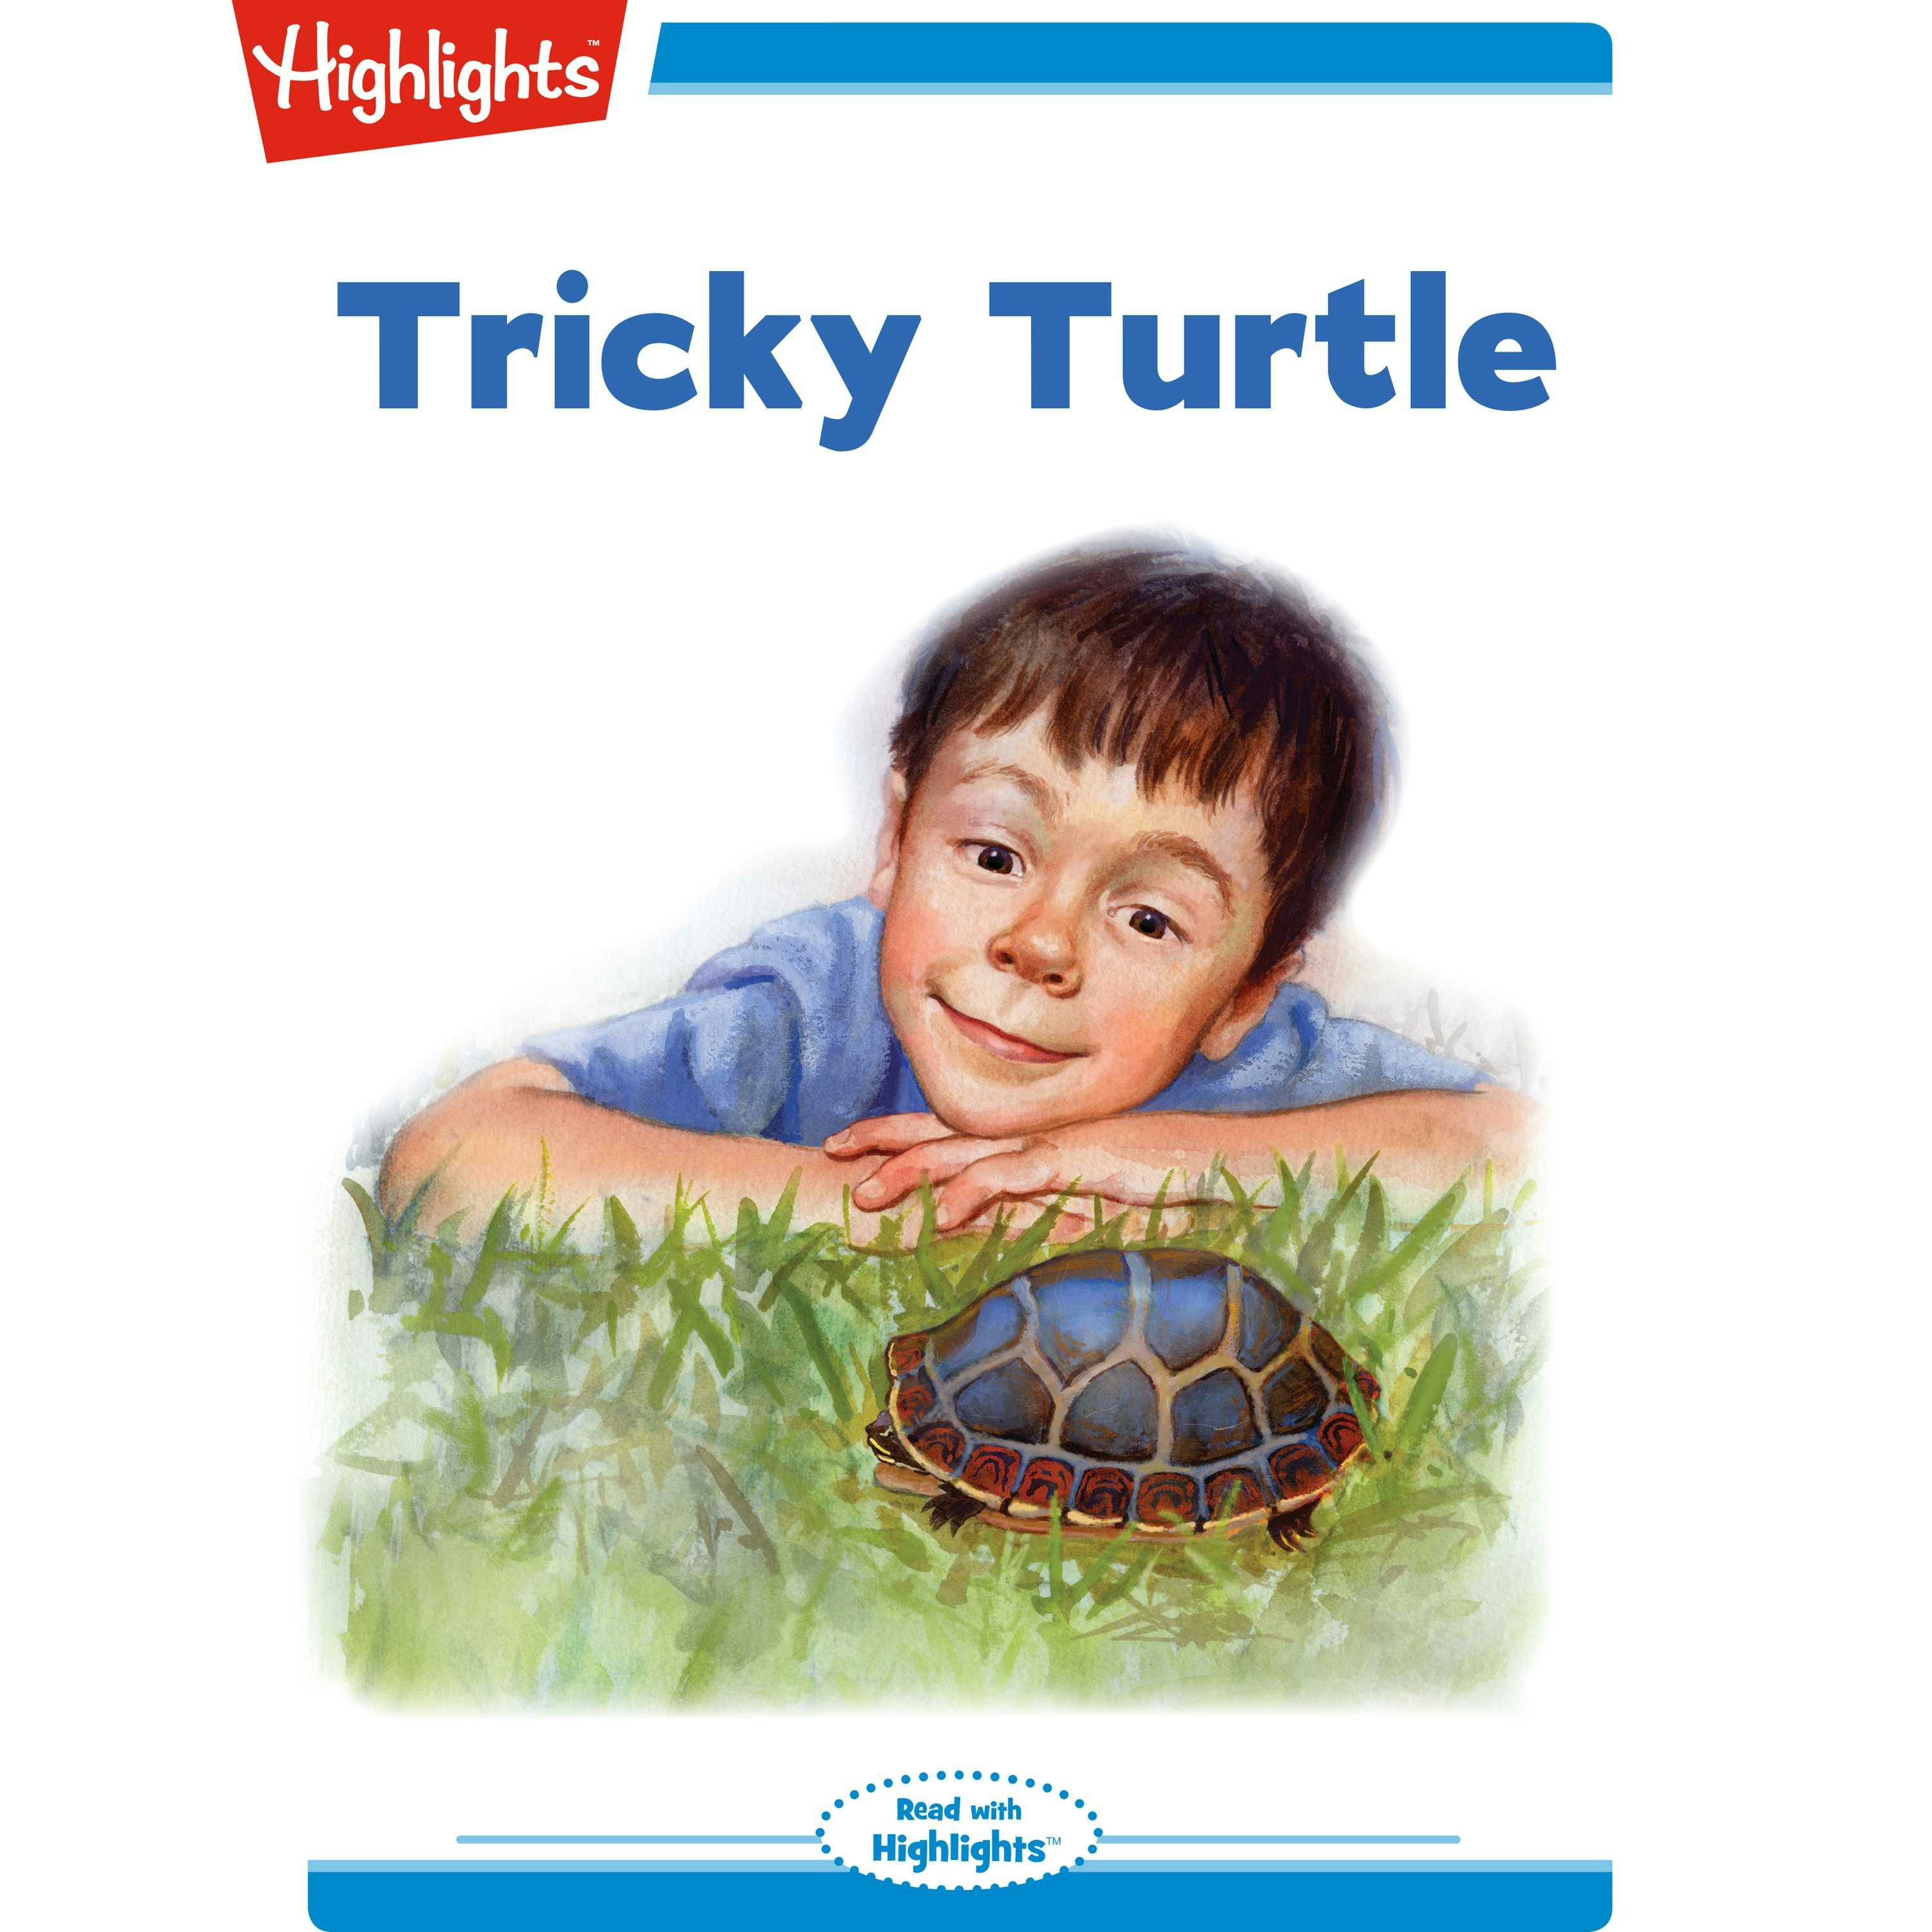 Tricky Turtle - Jeanne Barrett Hargett